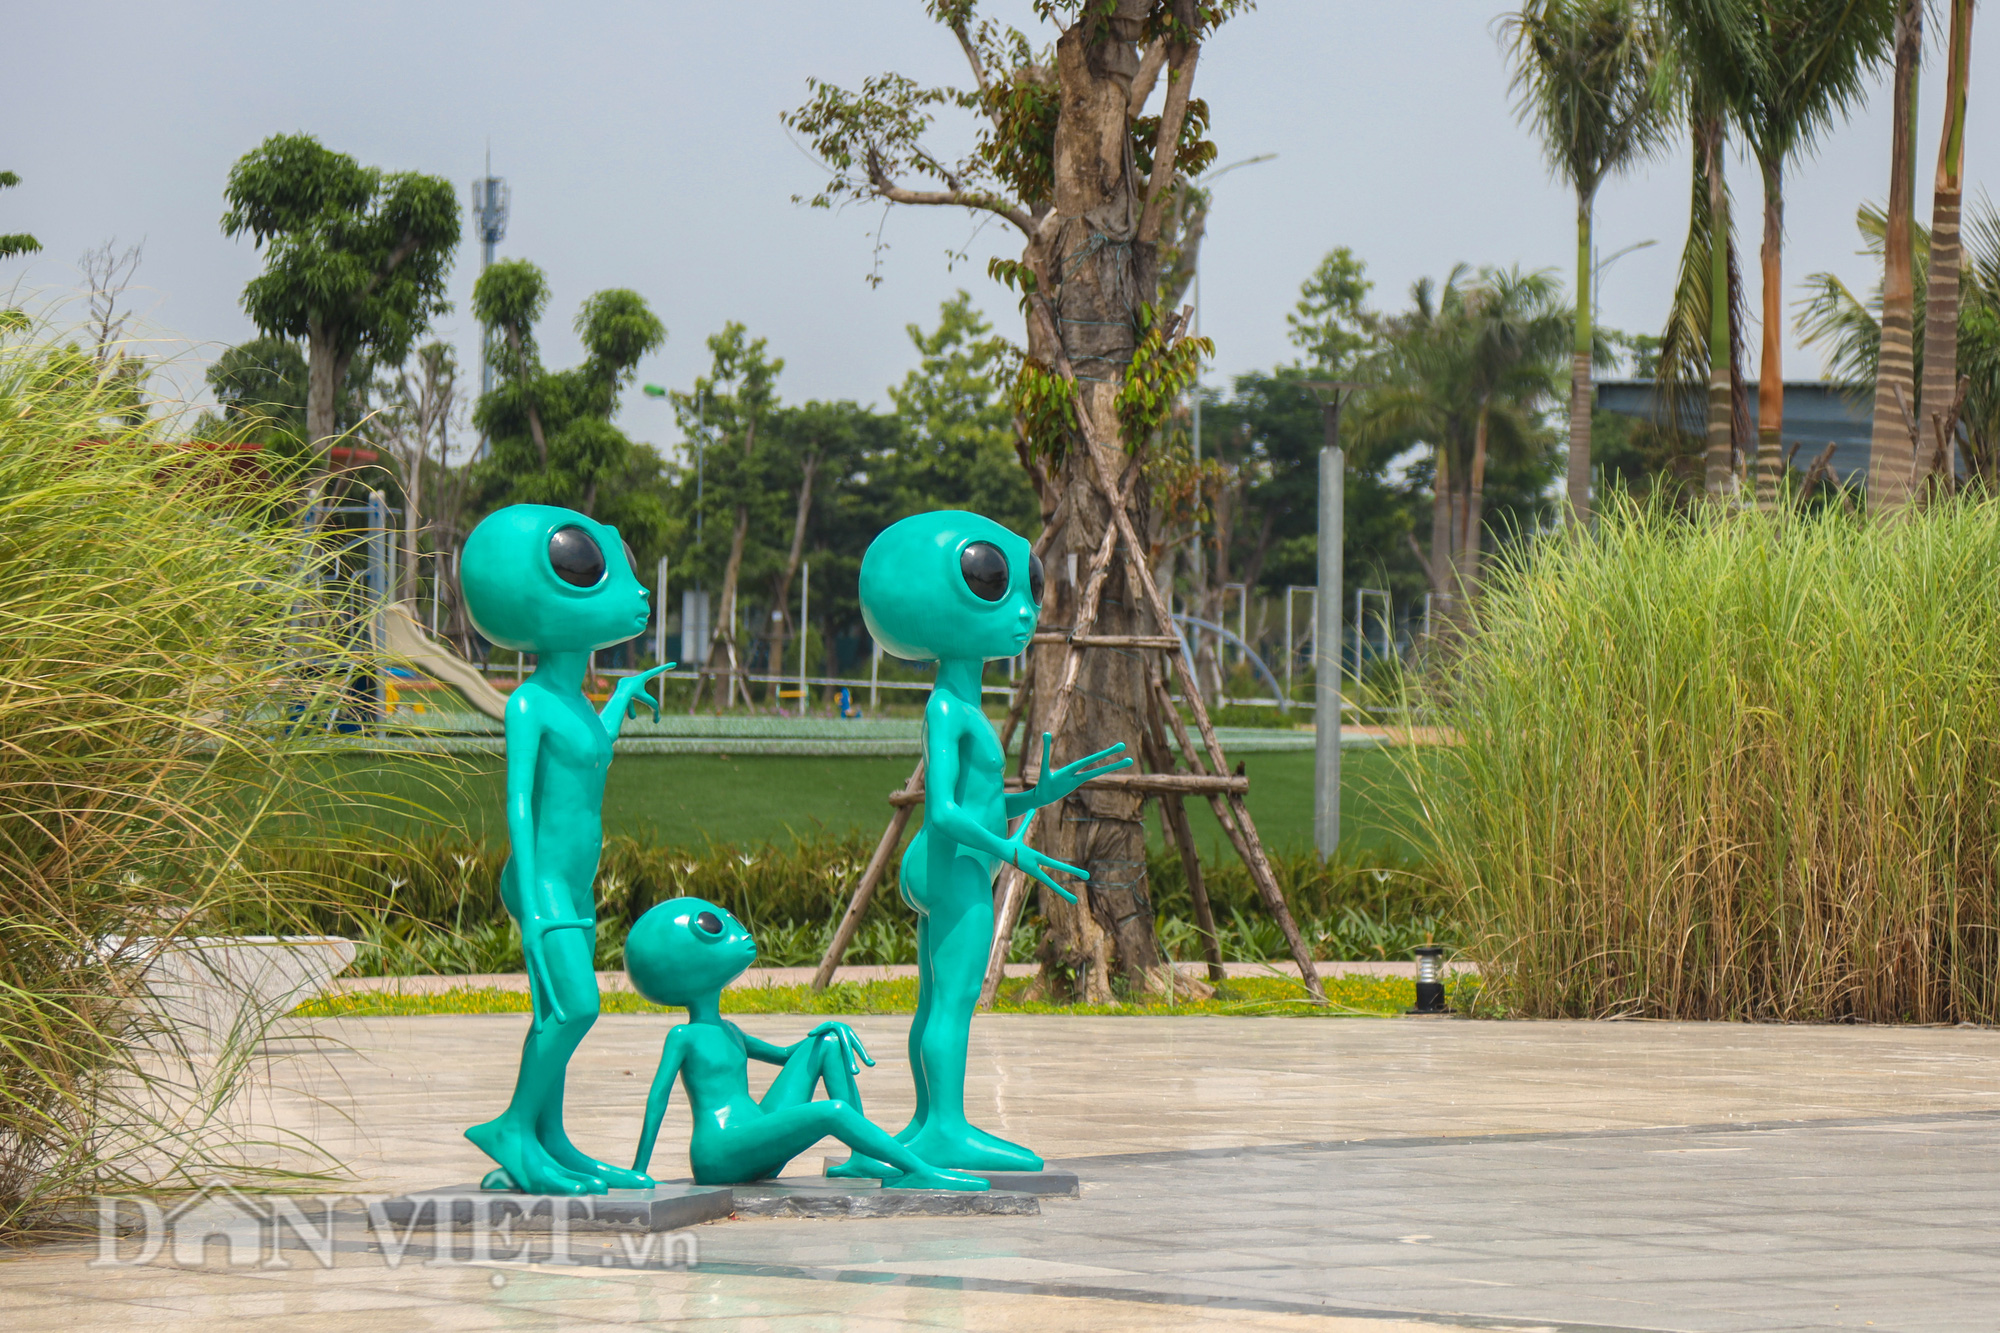 Toàn cảnh công viên Thiên văn học đầu tiên của Đông Nam Á ở Hà Nội - Ảnh 11.